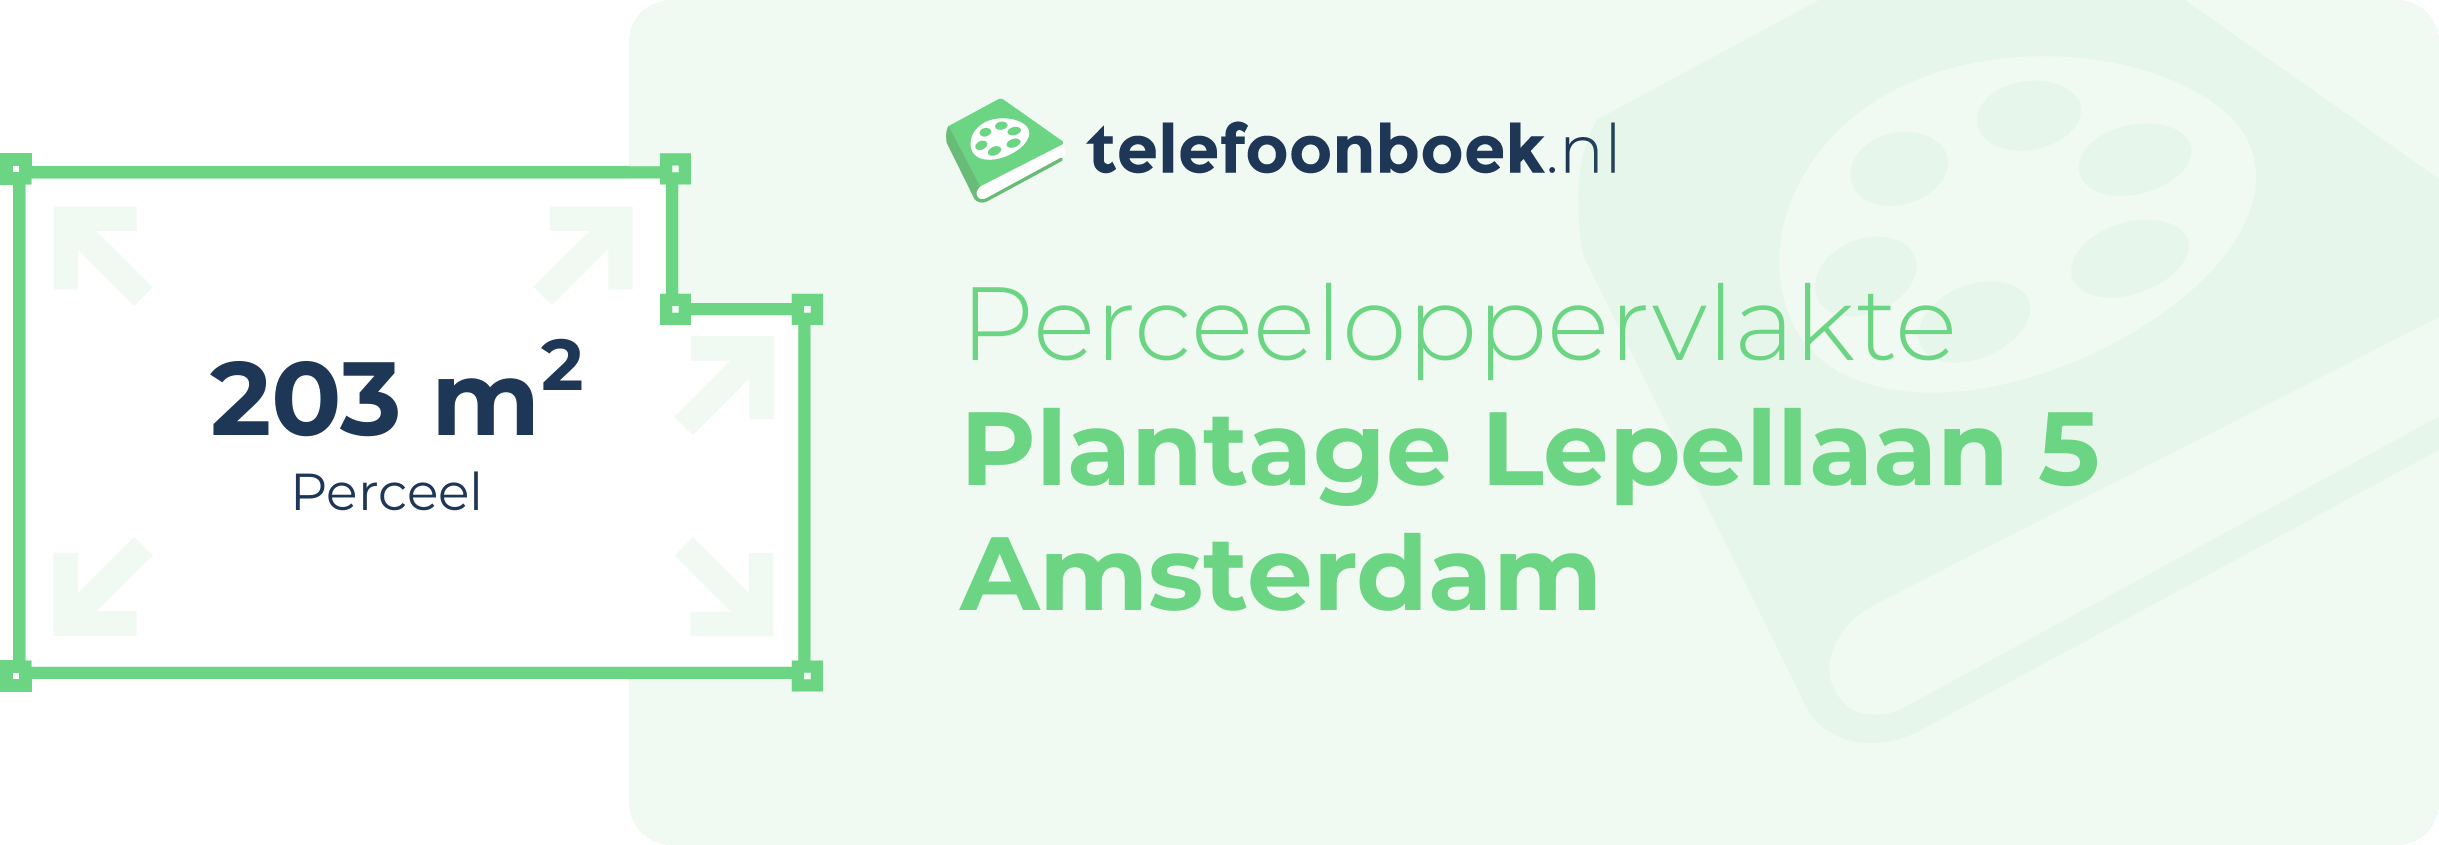 Perceeloppervlakte Plantage Lepellaan 5 Amsterdam